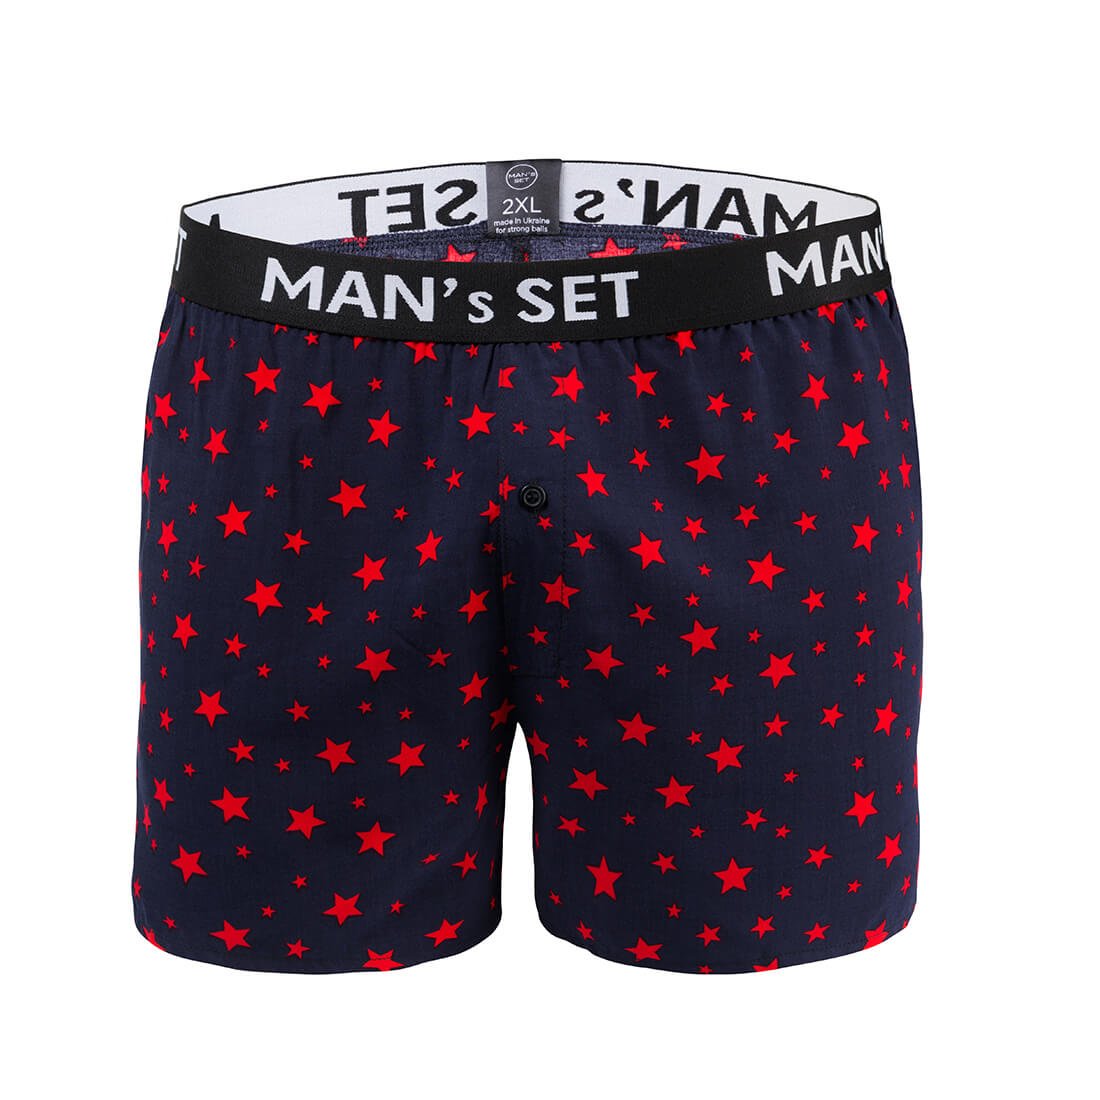 Сімейки чоловічі з 100% бавовни, Shorts, темно-синій з червоними зірками MansSet